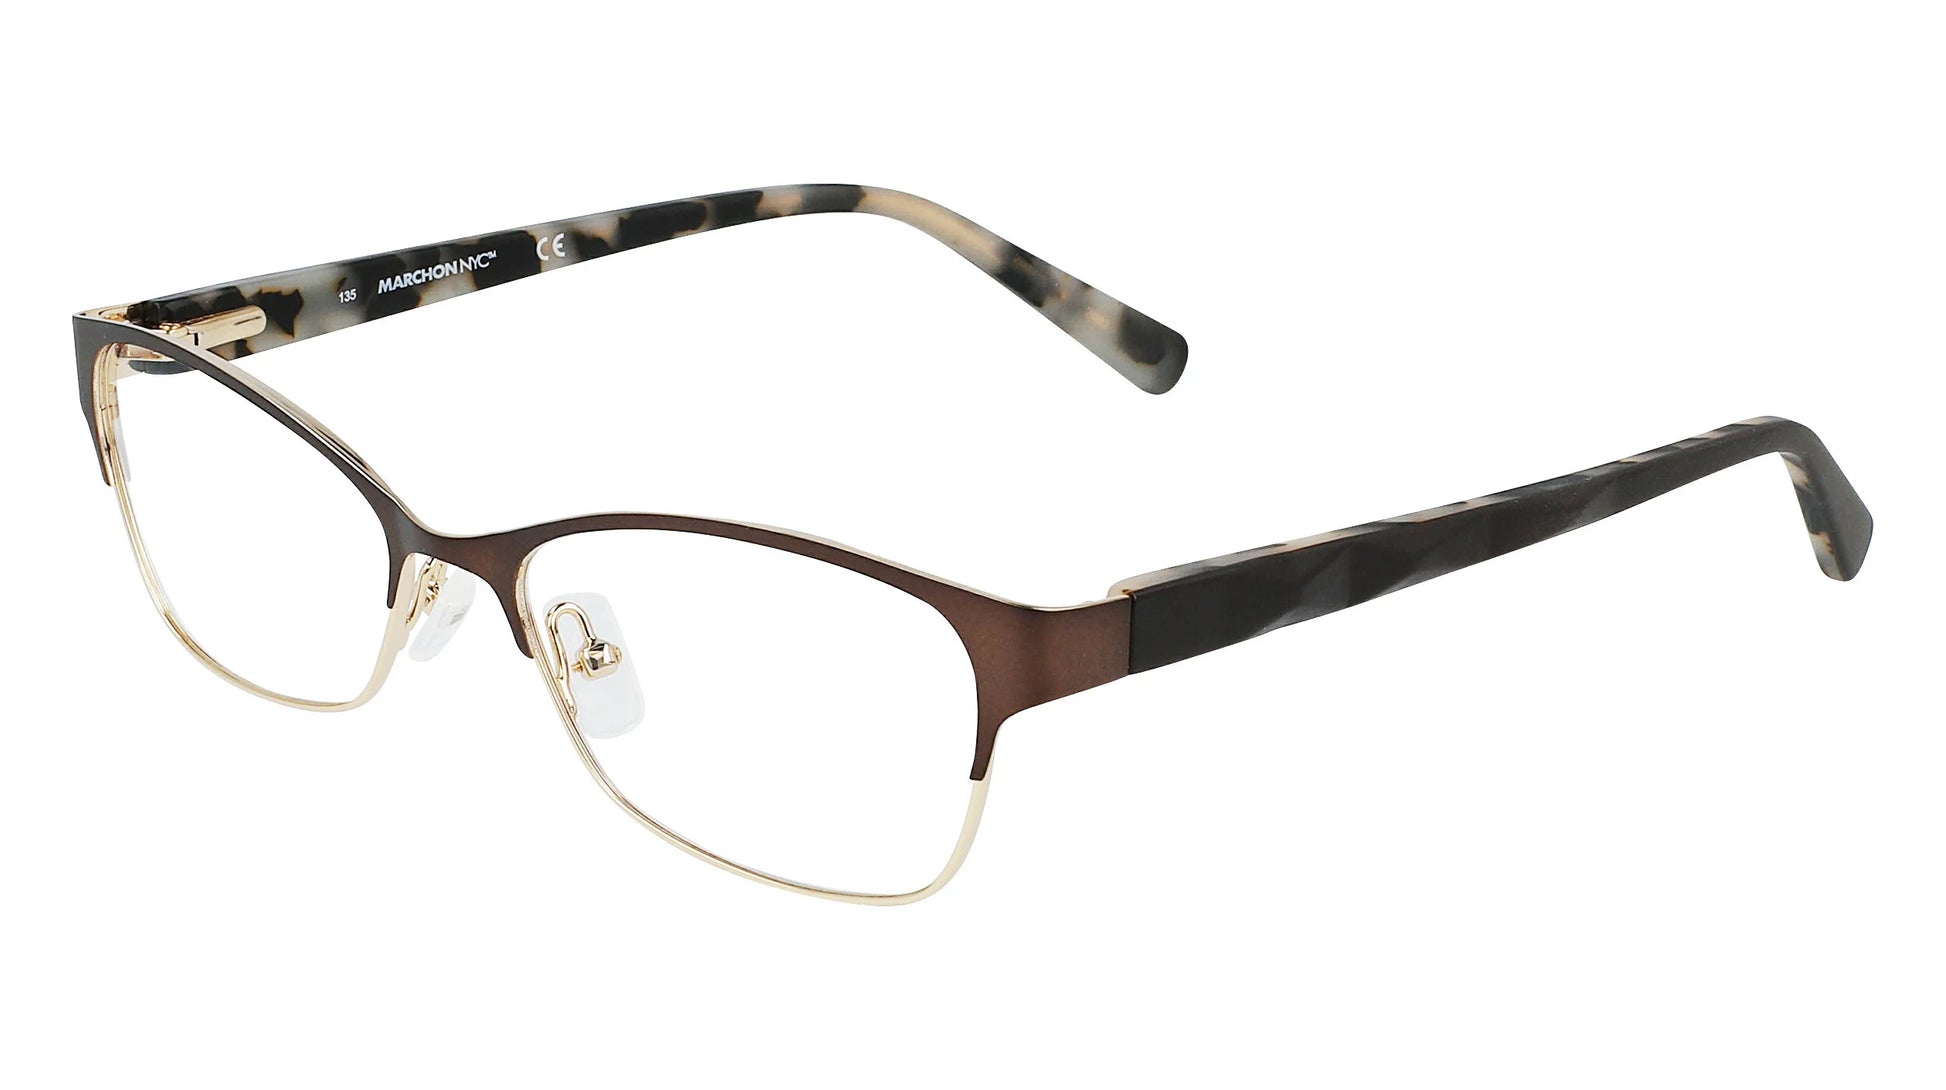 Marchon NYC M-SURREY Eyeglasses Brown-Gold